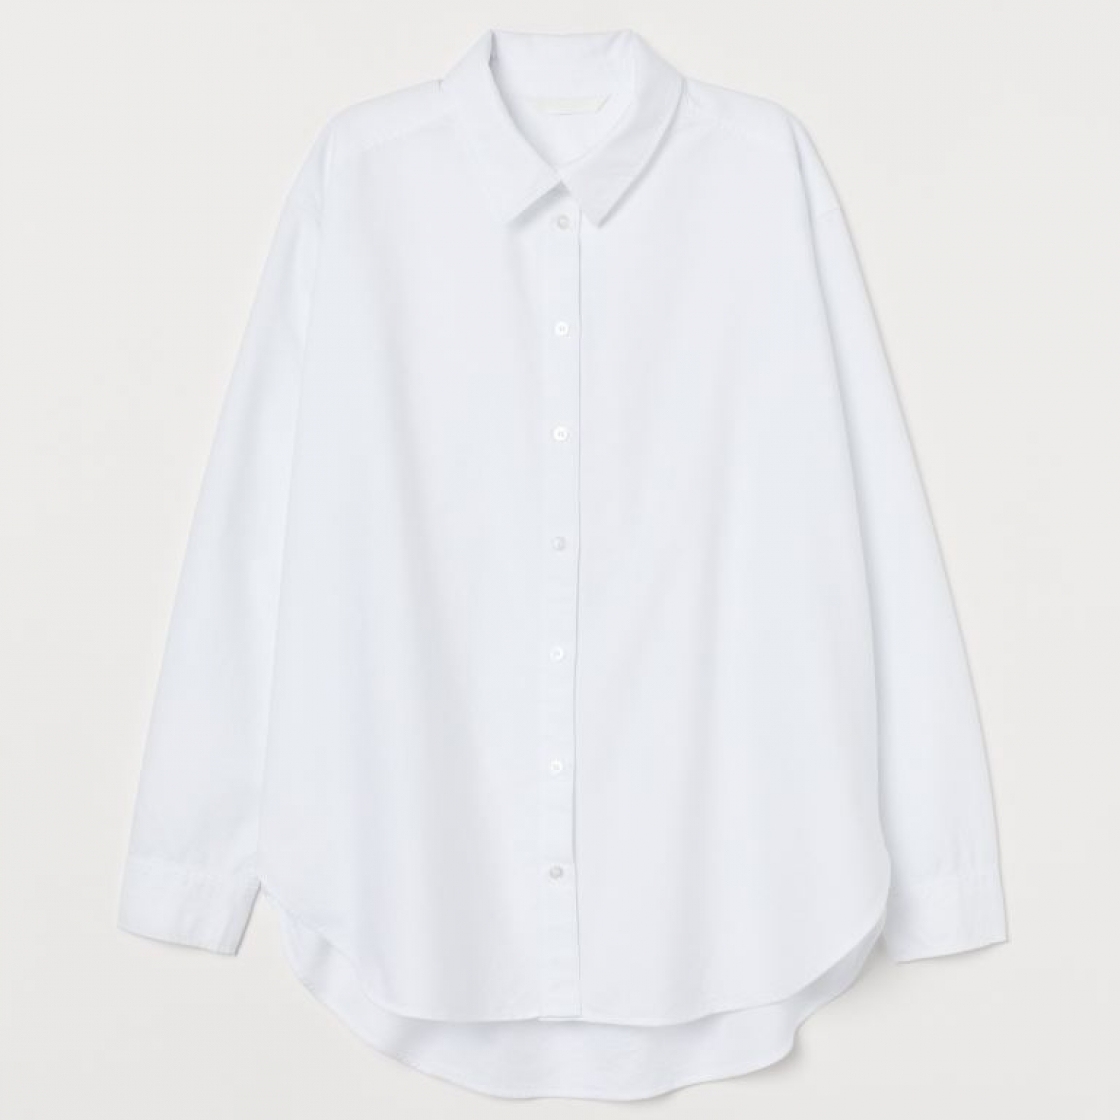 classic women's white shirt